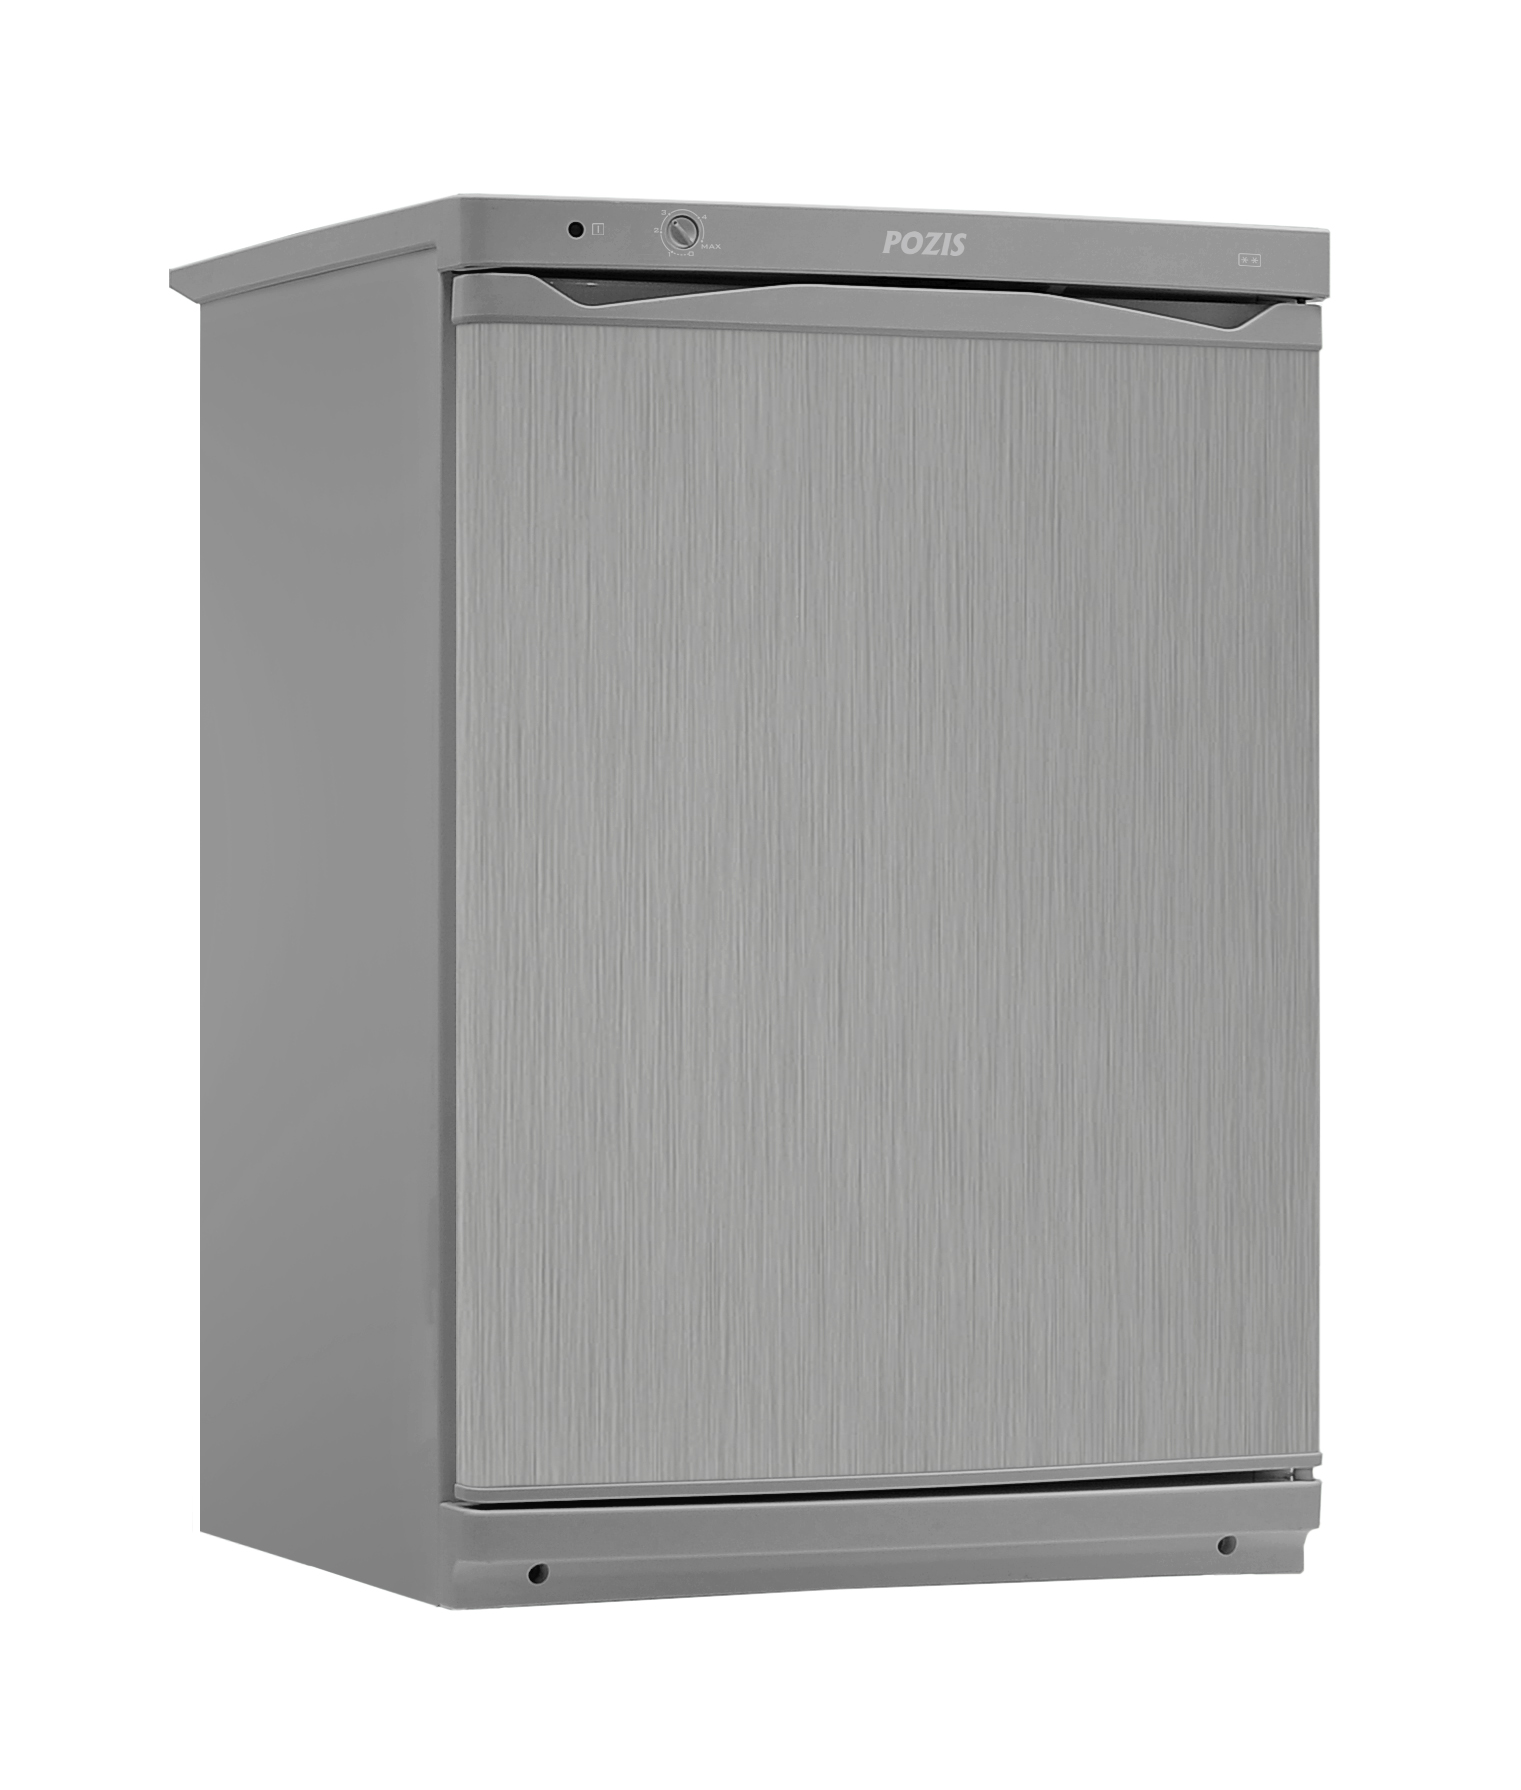 Холодильник бытовой POZIS-Свияга-410-1